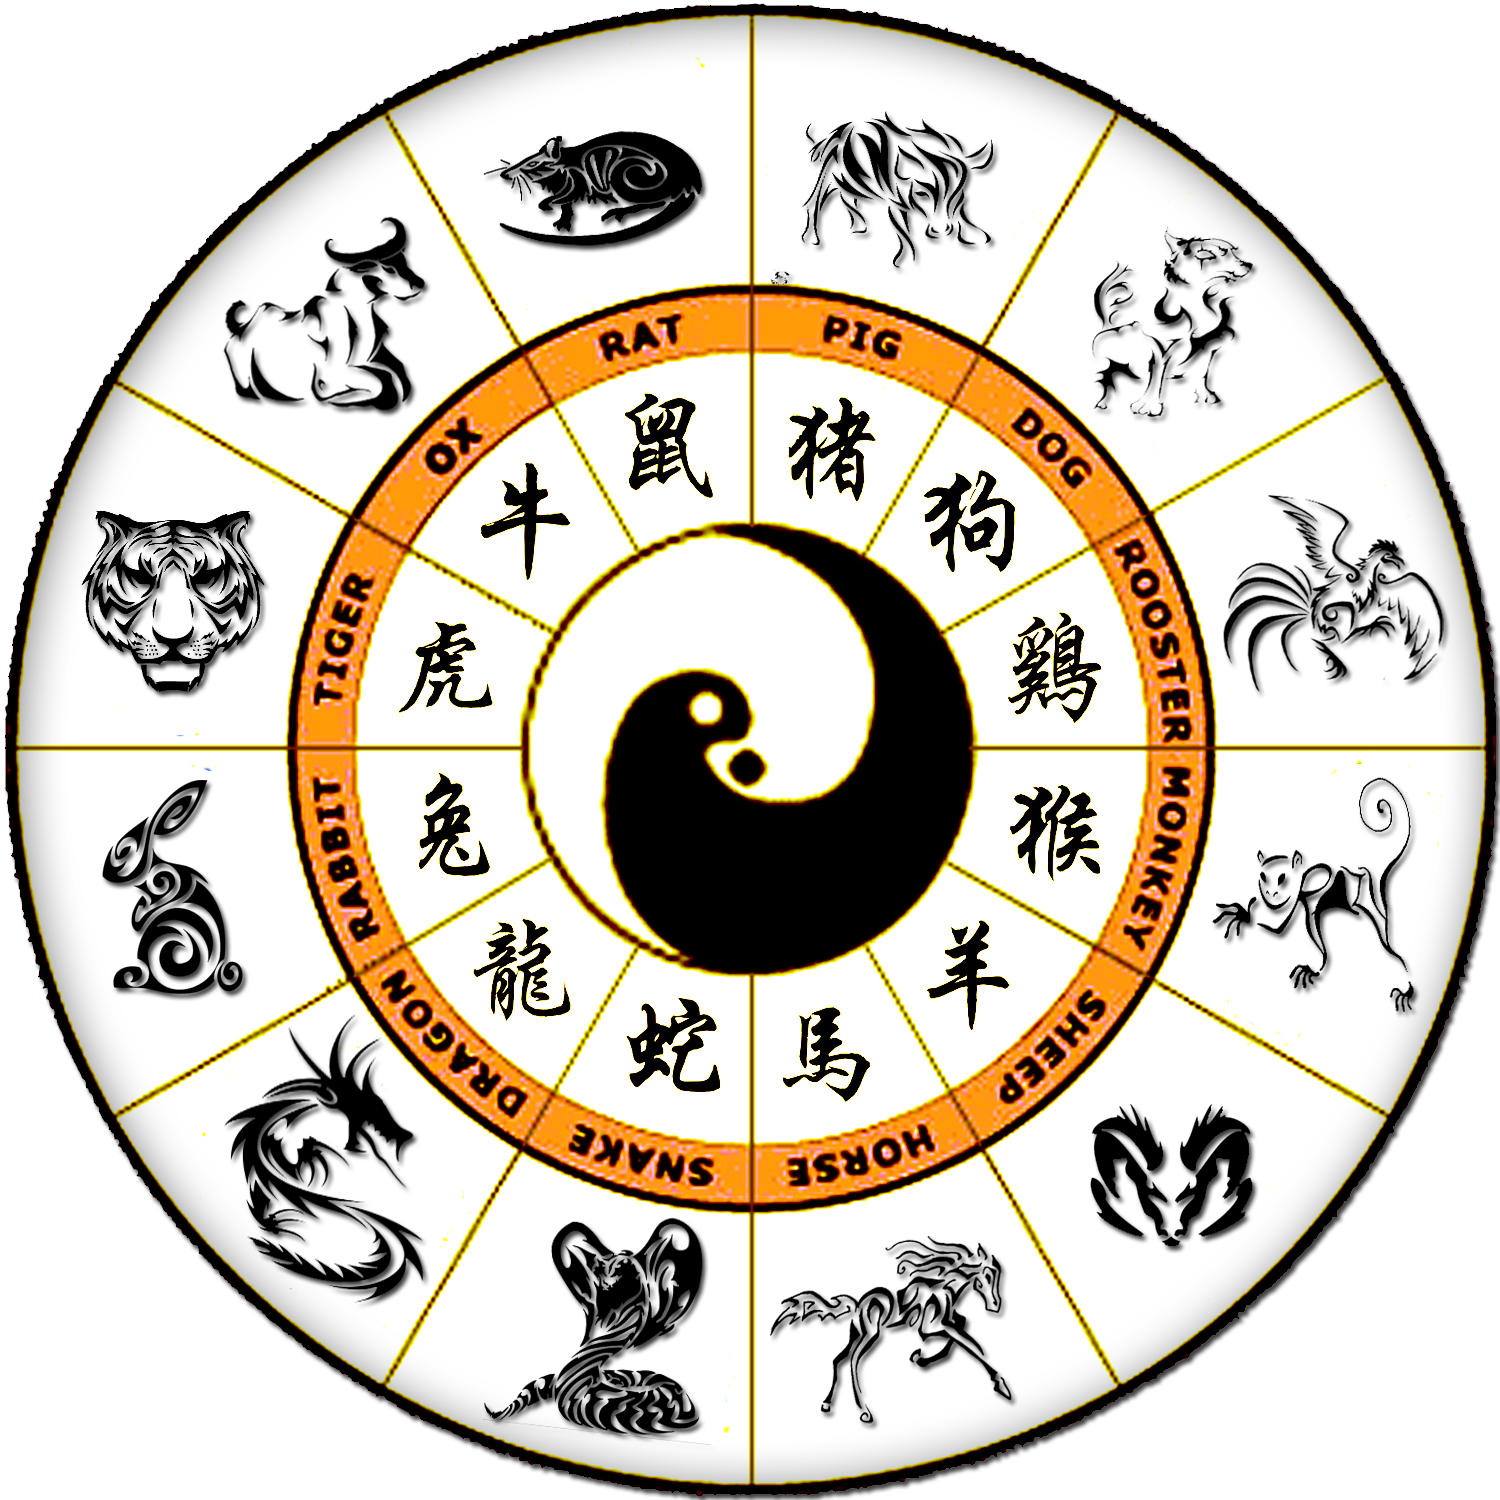 Гороскоп совместимости: таблица совместимости по знакам зодиака в любви, браке - бесплатный гороскоп для мужчин и женщин.